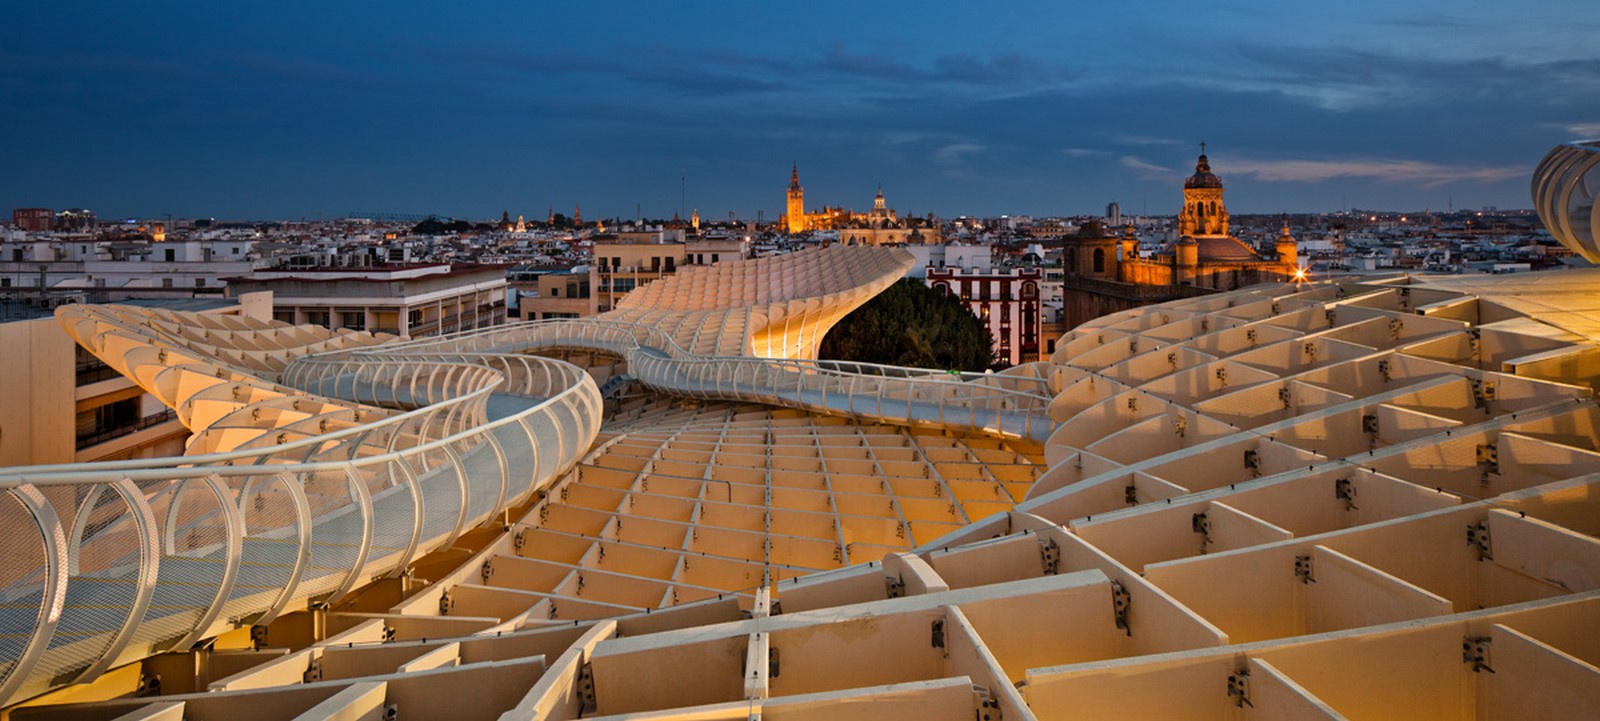 西班牙的建筑:20座你应该参观的伟大建筑- Sheet9